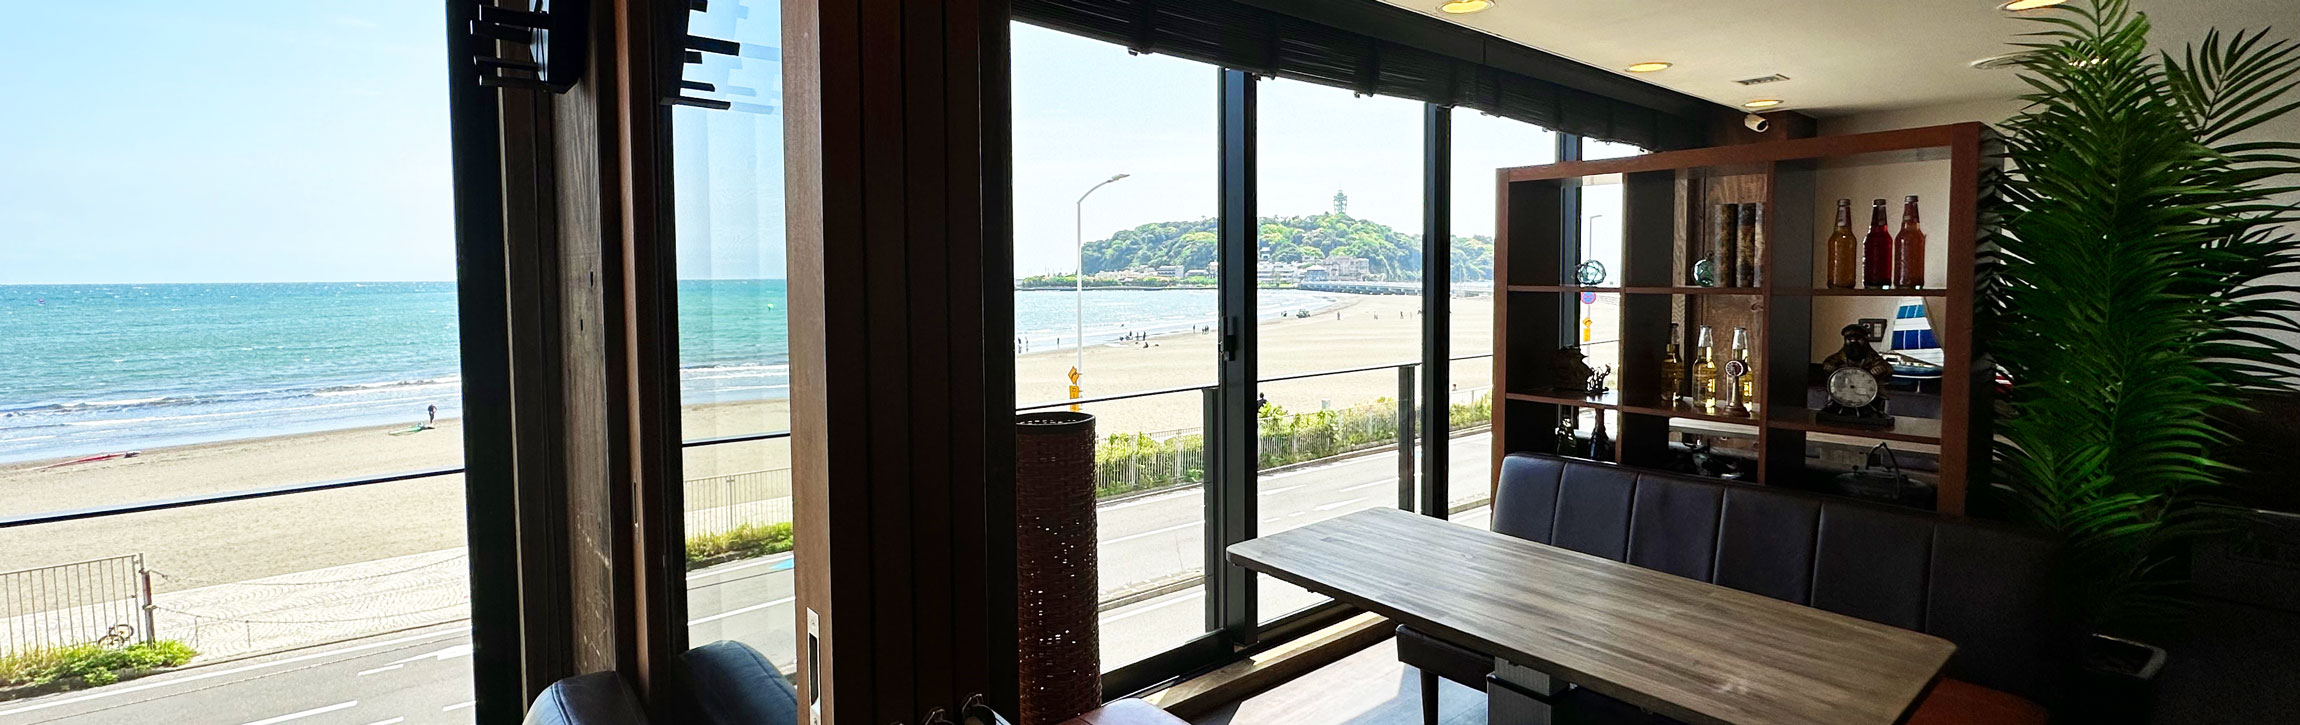 江ノ島の海が見えるカフェ